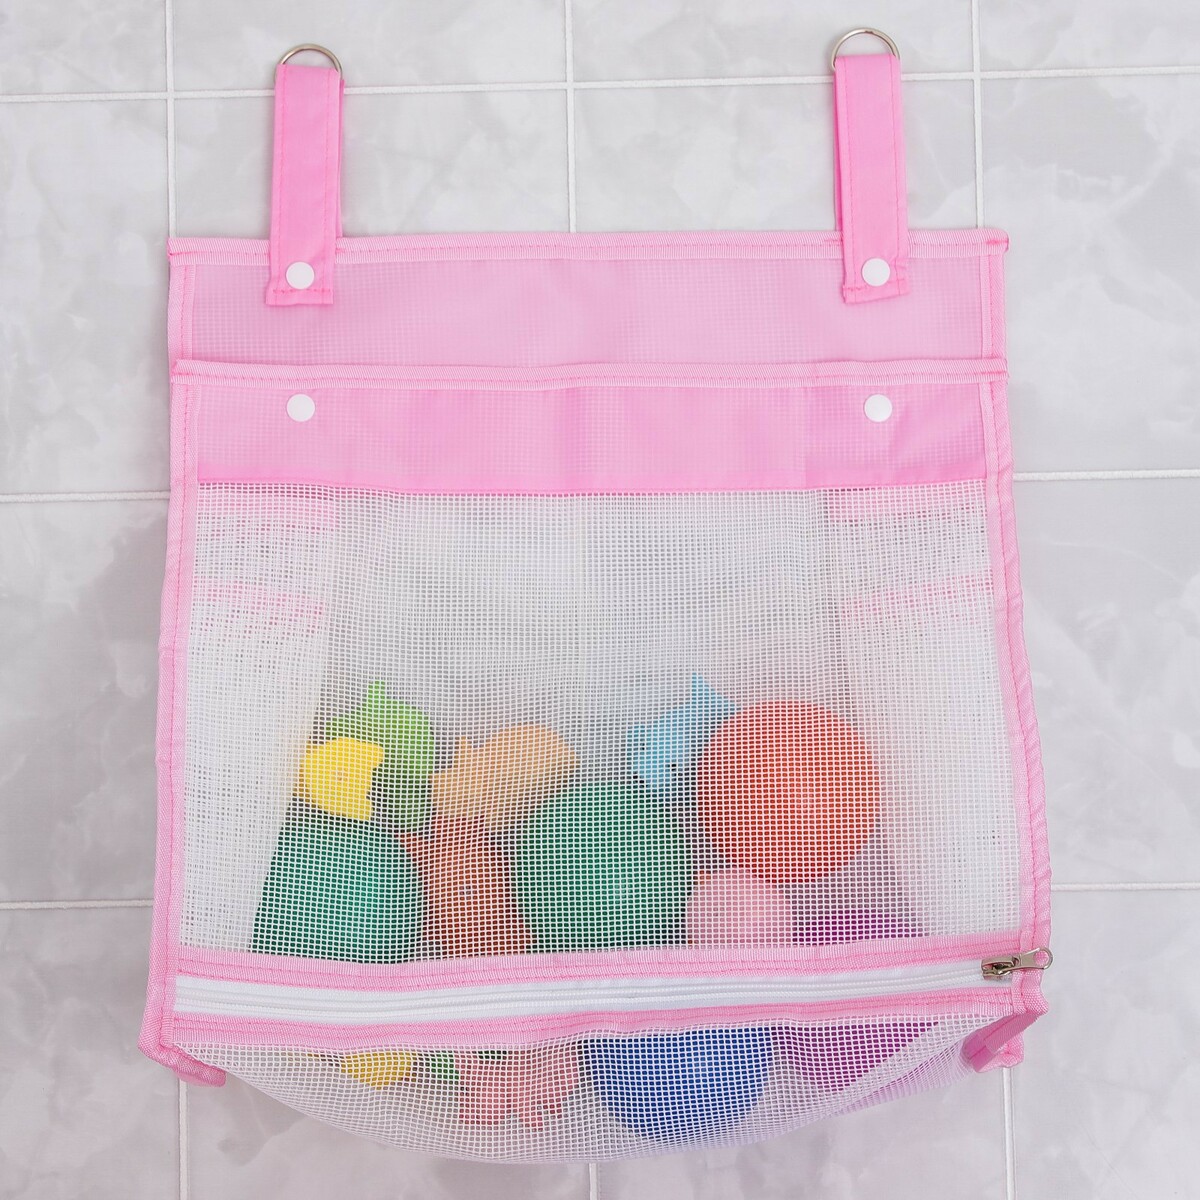 Сетка для хранения игрушек в ванной, цвет розовый сетка для хранения игрушек на присосках